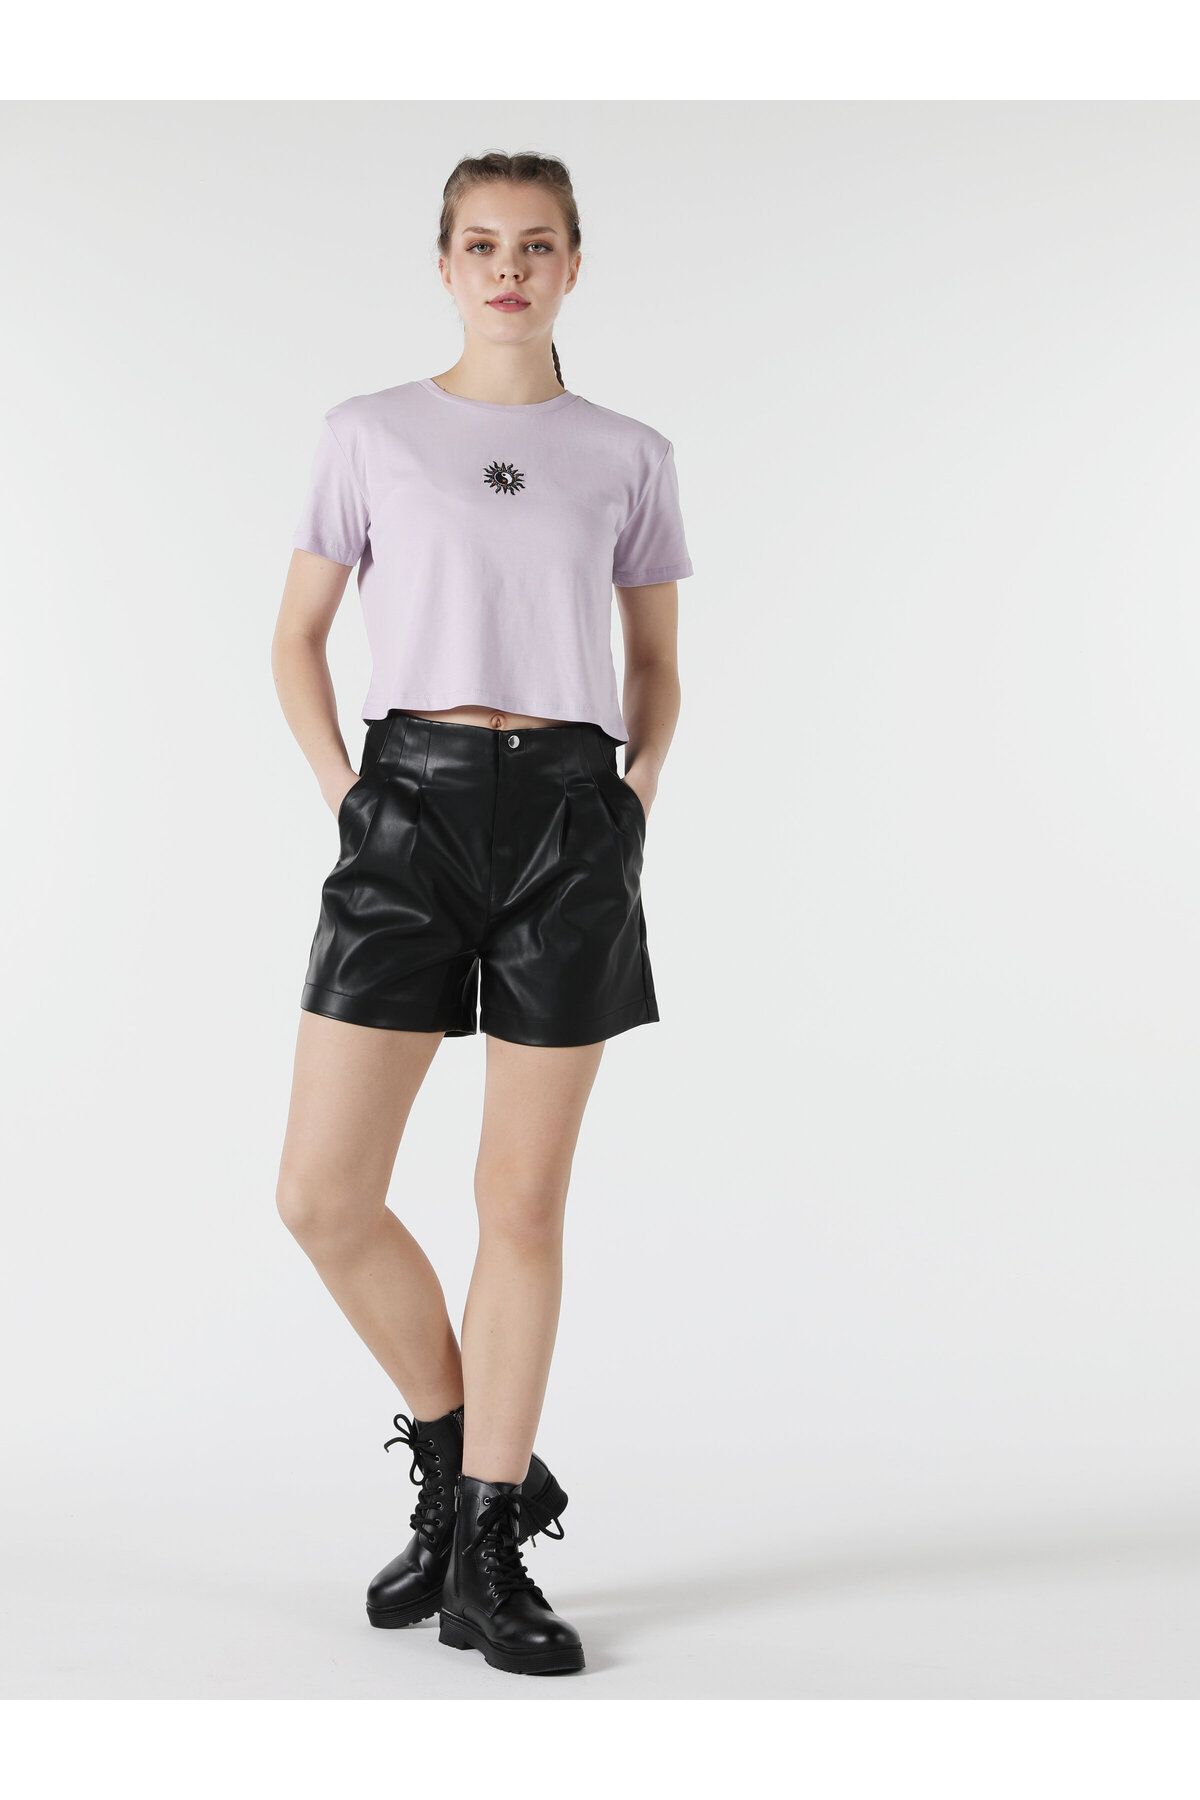 Colin’s تی شرت آستین کوتاه زنانه به رنگ بنفش چاپ شده با یقه ی منظم